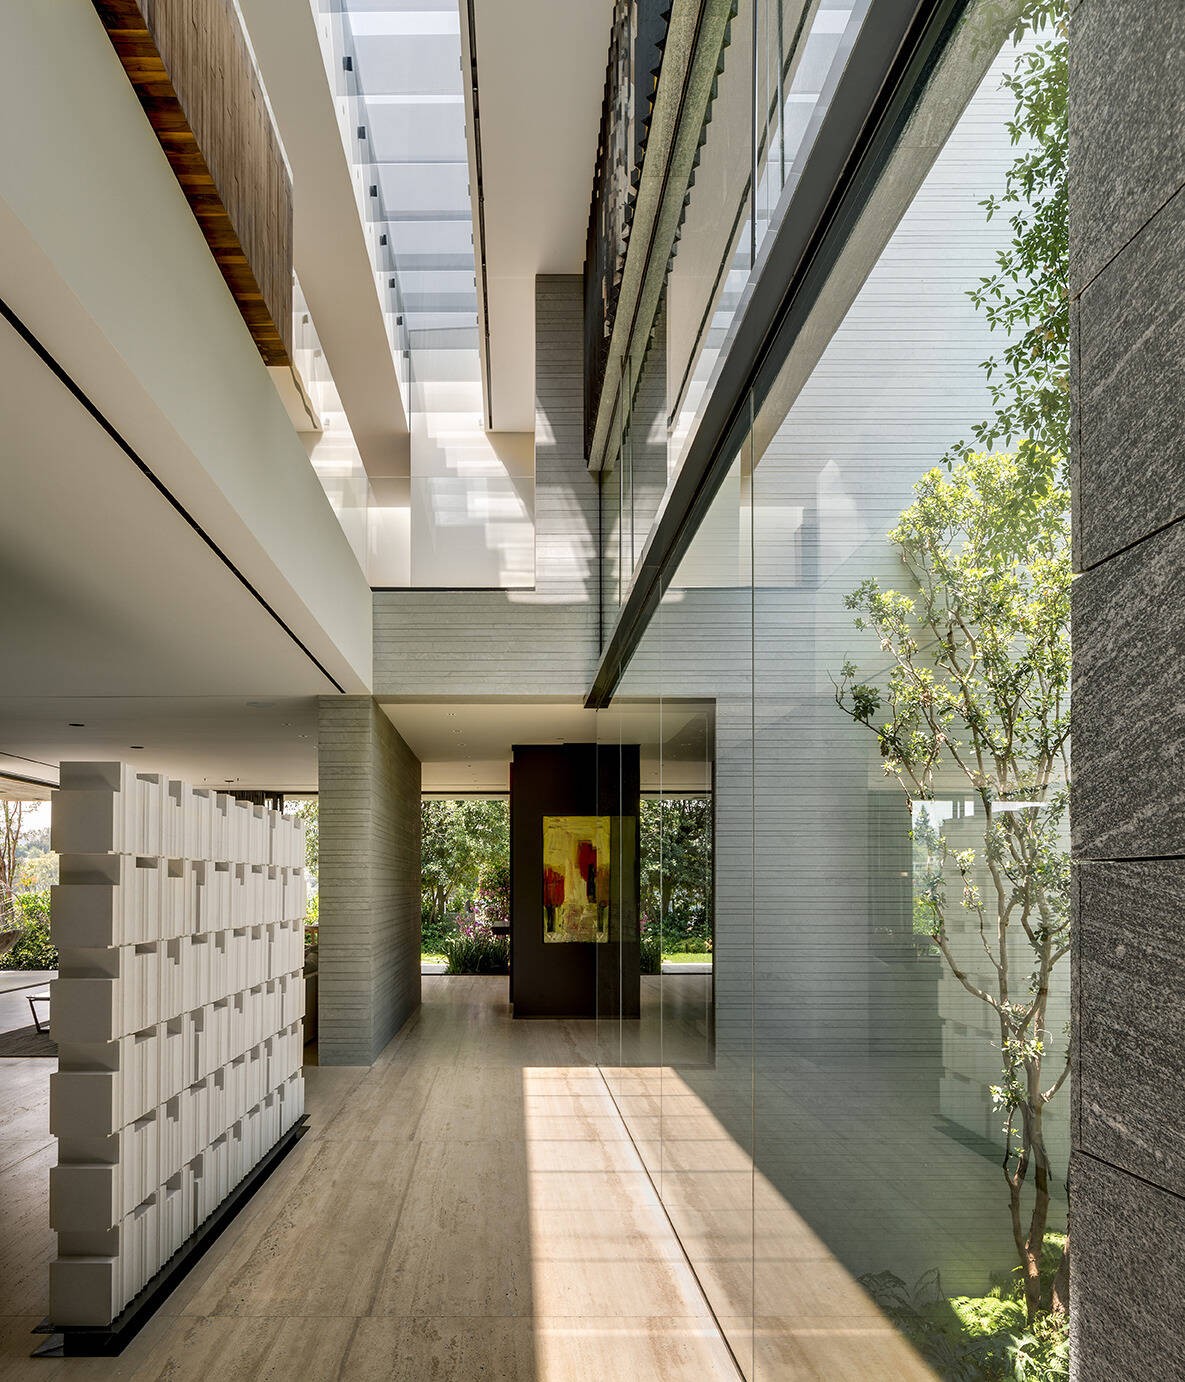 
Hành lang với khoảng trần cao gấp đôi bình thường là một trong những nét đặc biệt của kiến trúc căn nhà&nbsp;
